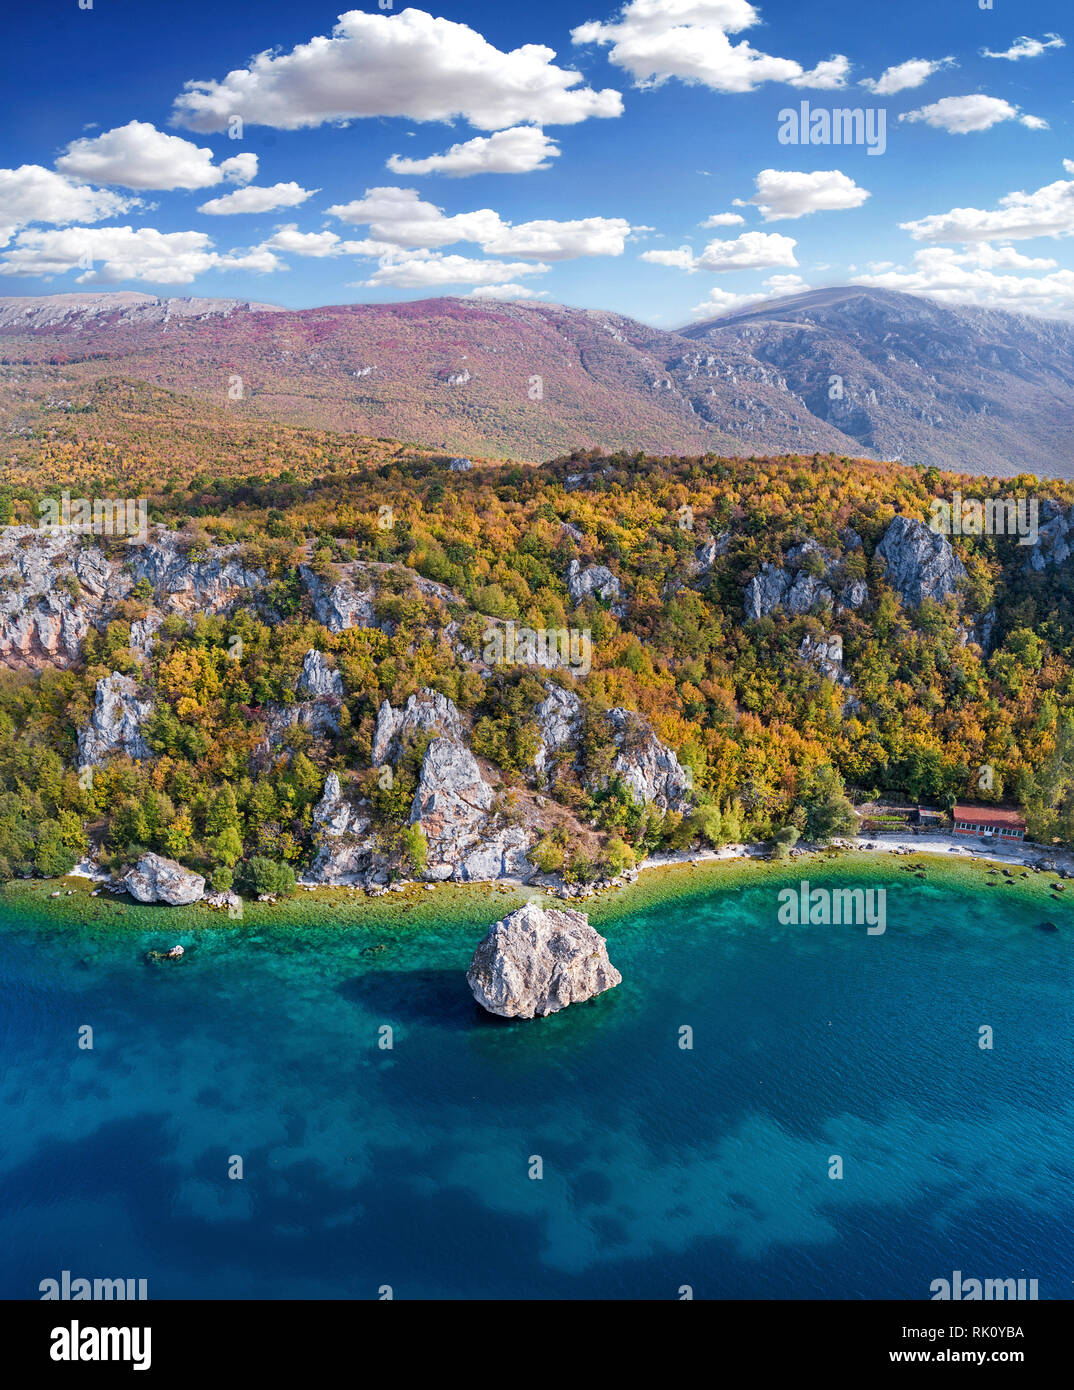 Il lago di Ohrid e Tarpeica piccola città in Macedonia con il big rock in riva al lago - drone fotografia Foto Stock